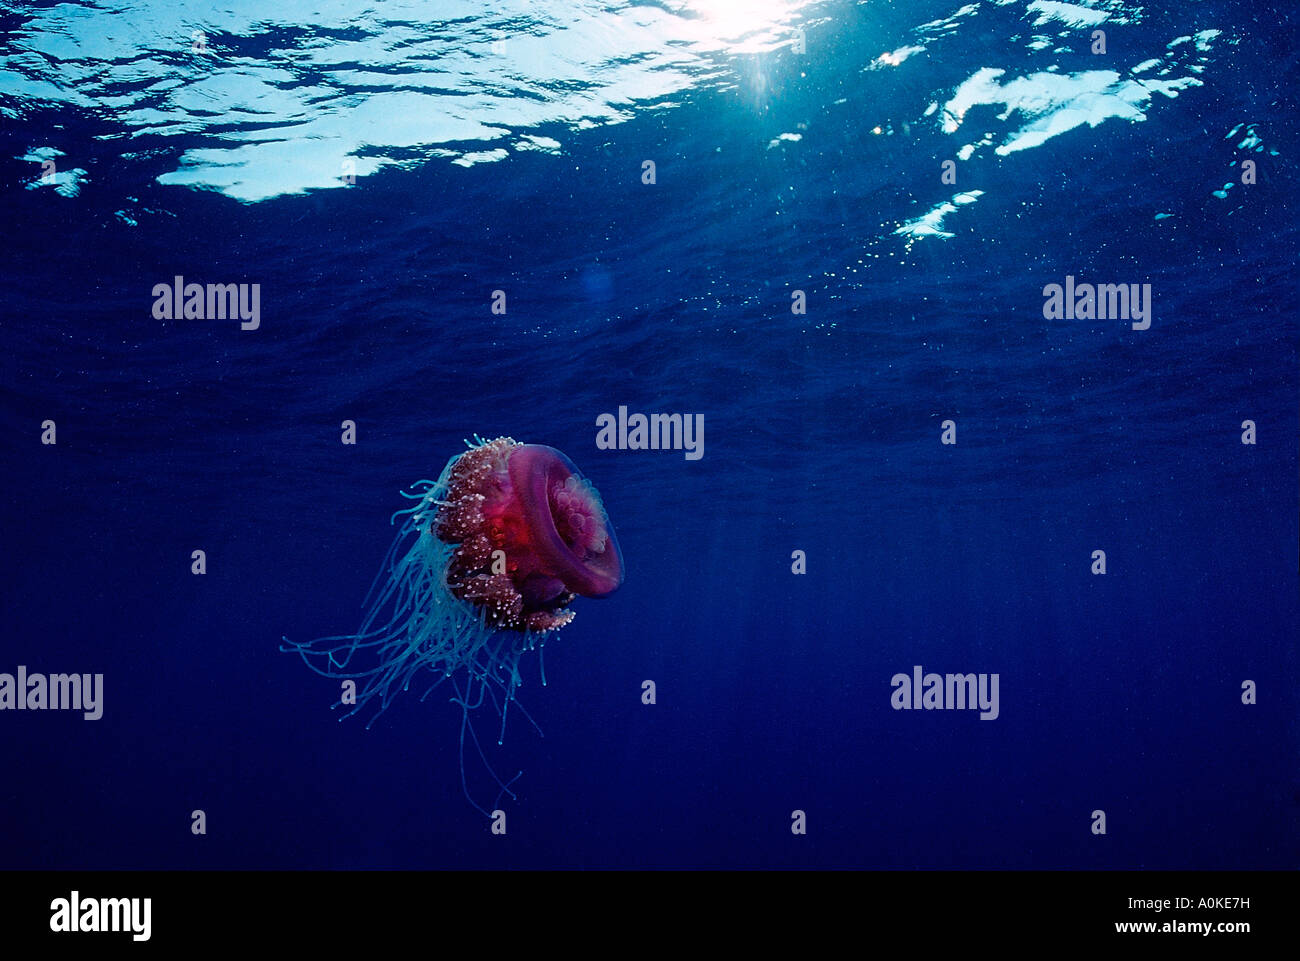 Crown jellyfish in Open Sea Netrostoma setouchina Red Sea Egypt Stock Photo